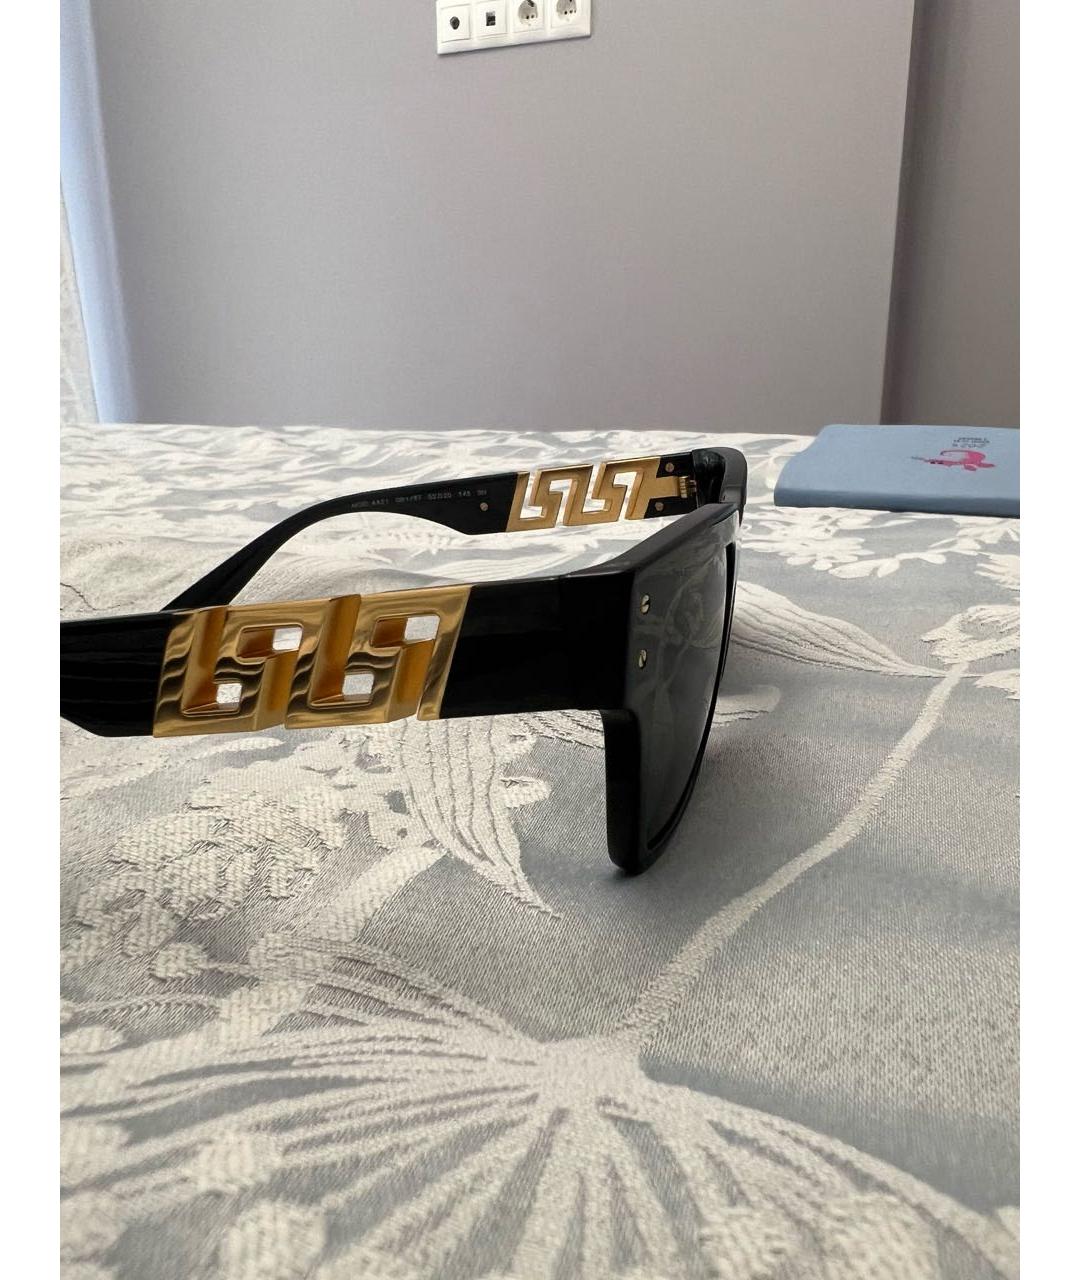 VERSACE Черные пластиковые солнцезащитные очки, фото 2